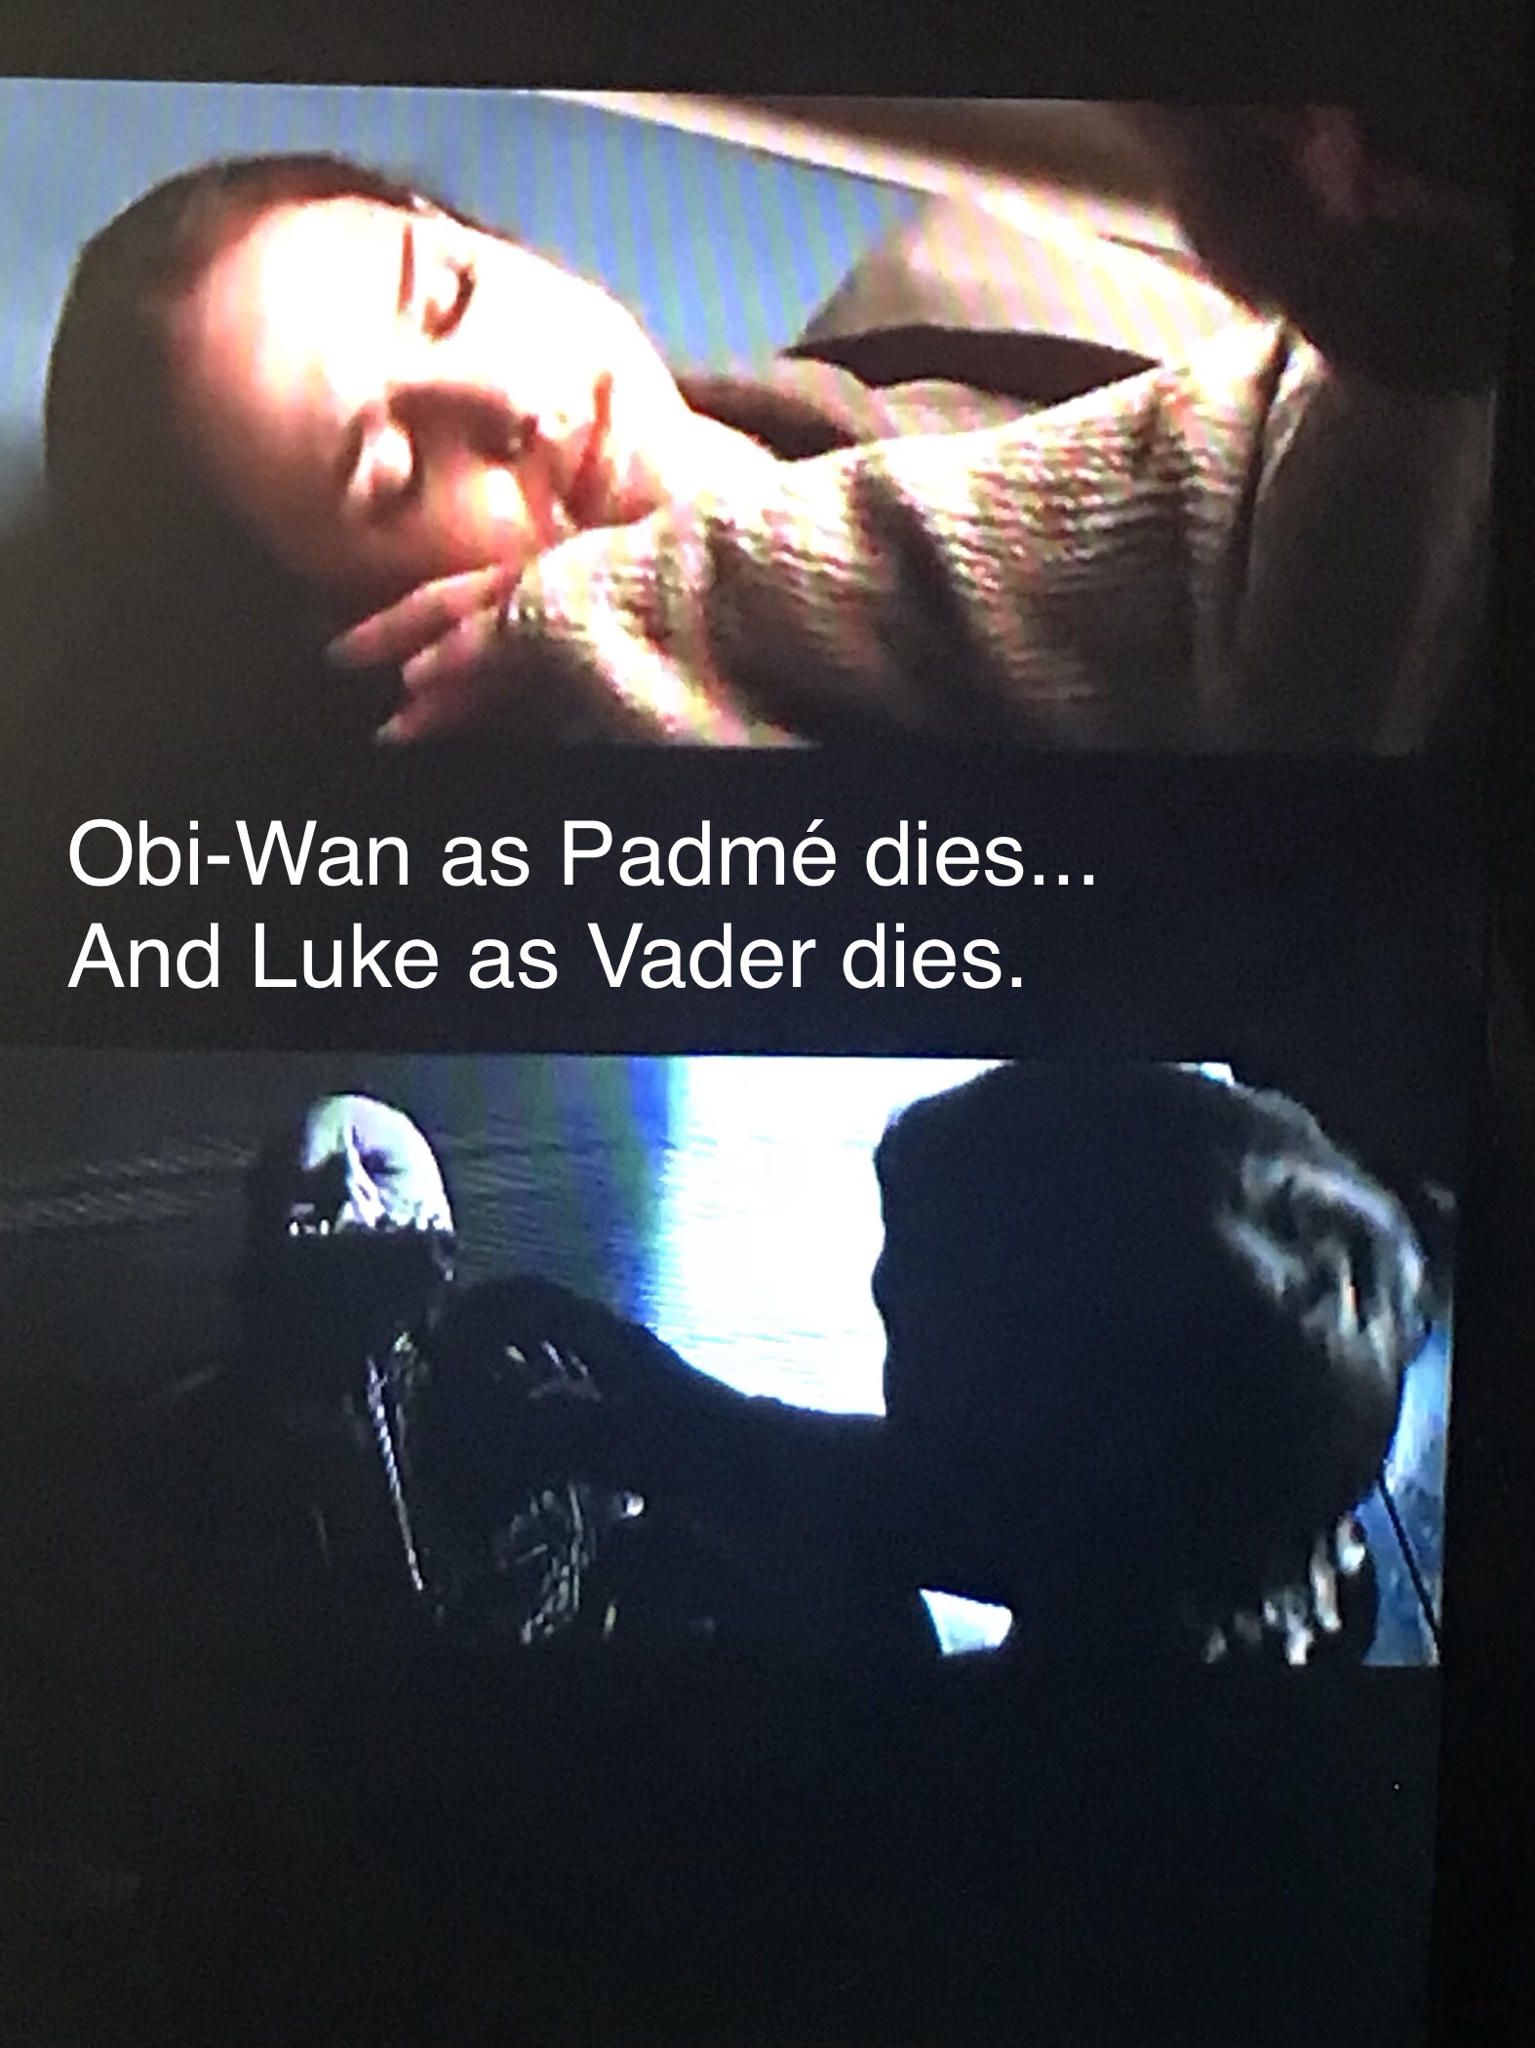 poster - ObiWan as Padm dies... And Luke as Vader dies.